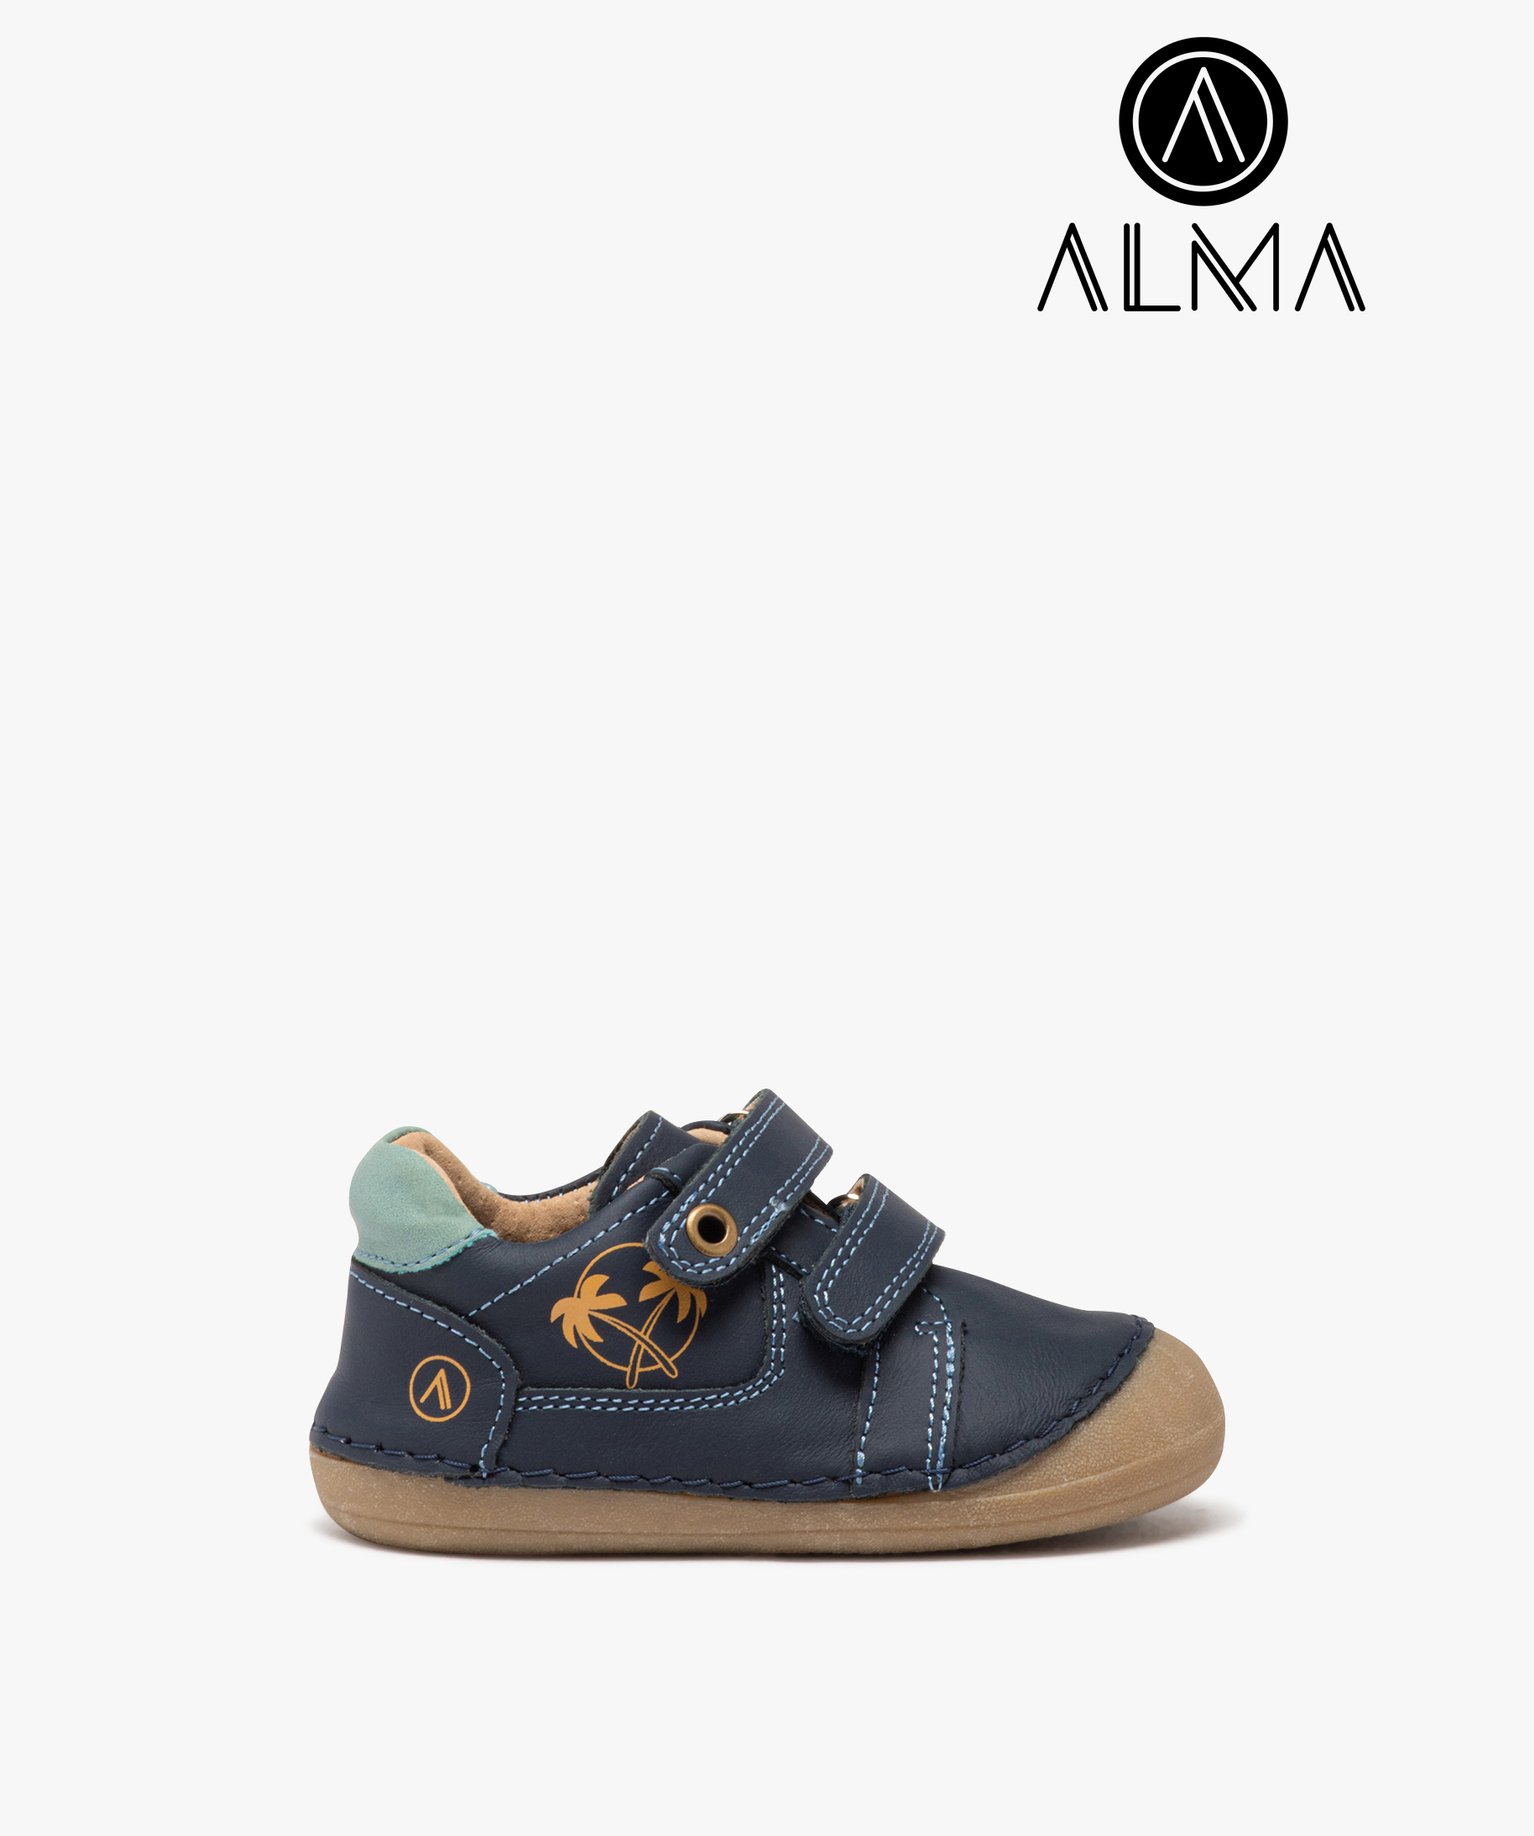 Chaussures premiers pas en cuir souple à double scratch bébé garçon - Alma - 17 - marine - ALMA